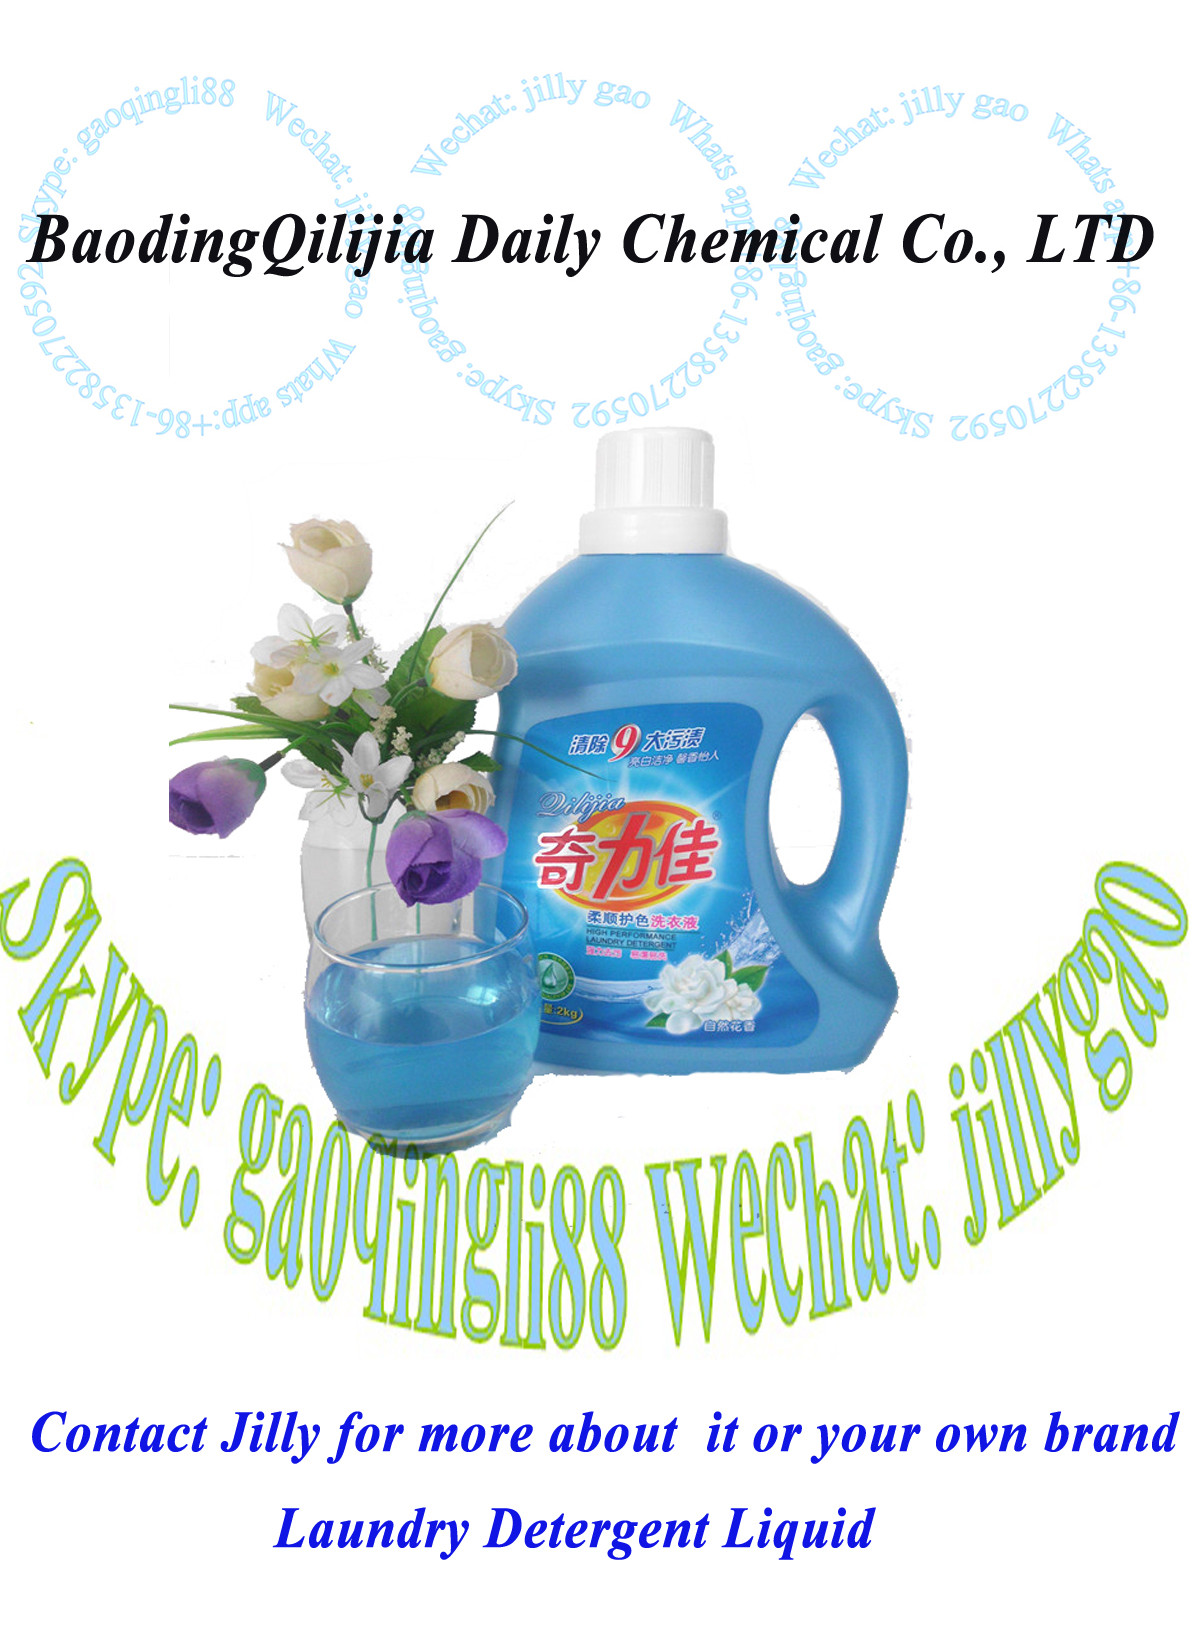 Best liquid detergent/Laundry Detergent Liquid for machine wash